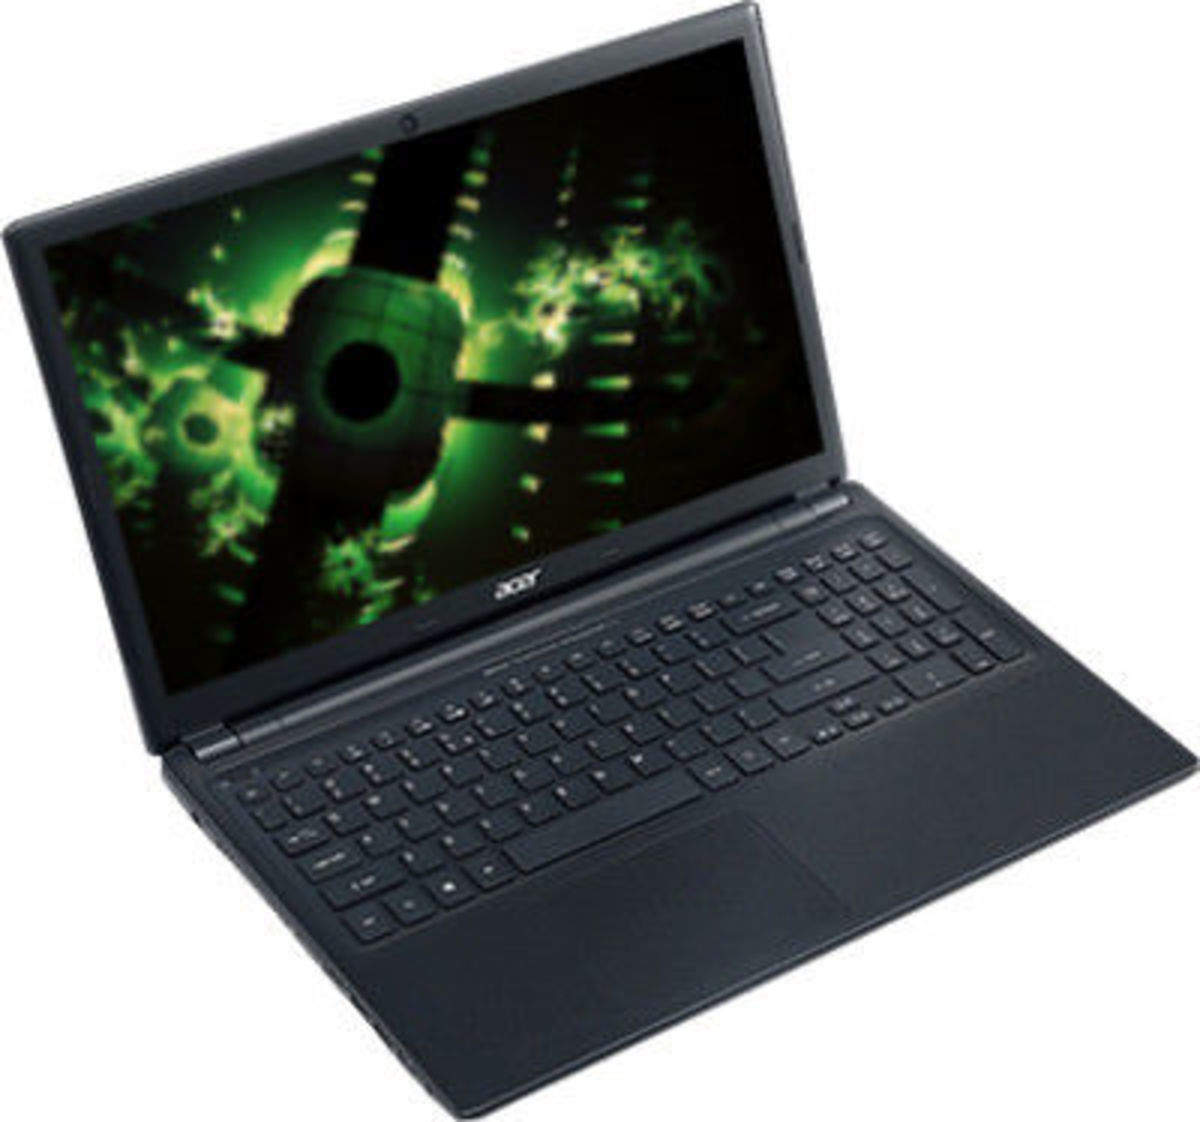 Асер Аспайр v5 571g. Ноутбук Acer Aspire v5-571g. Ноутбук g1. Acer Aspire v5-571 совместимые модели.